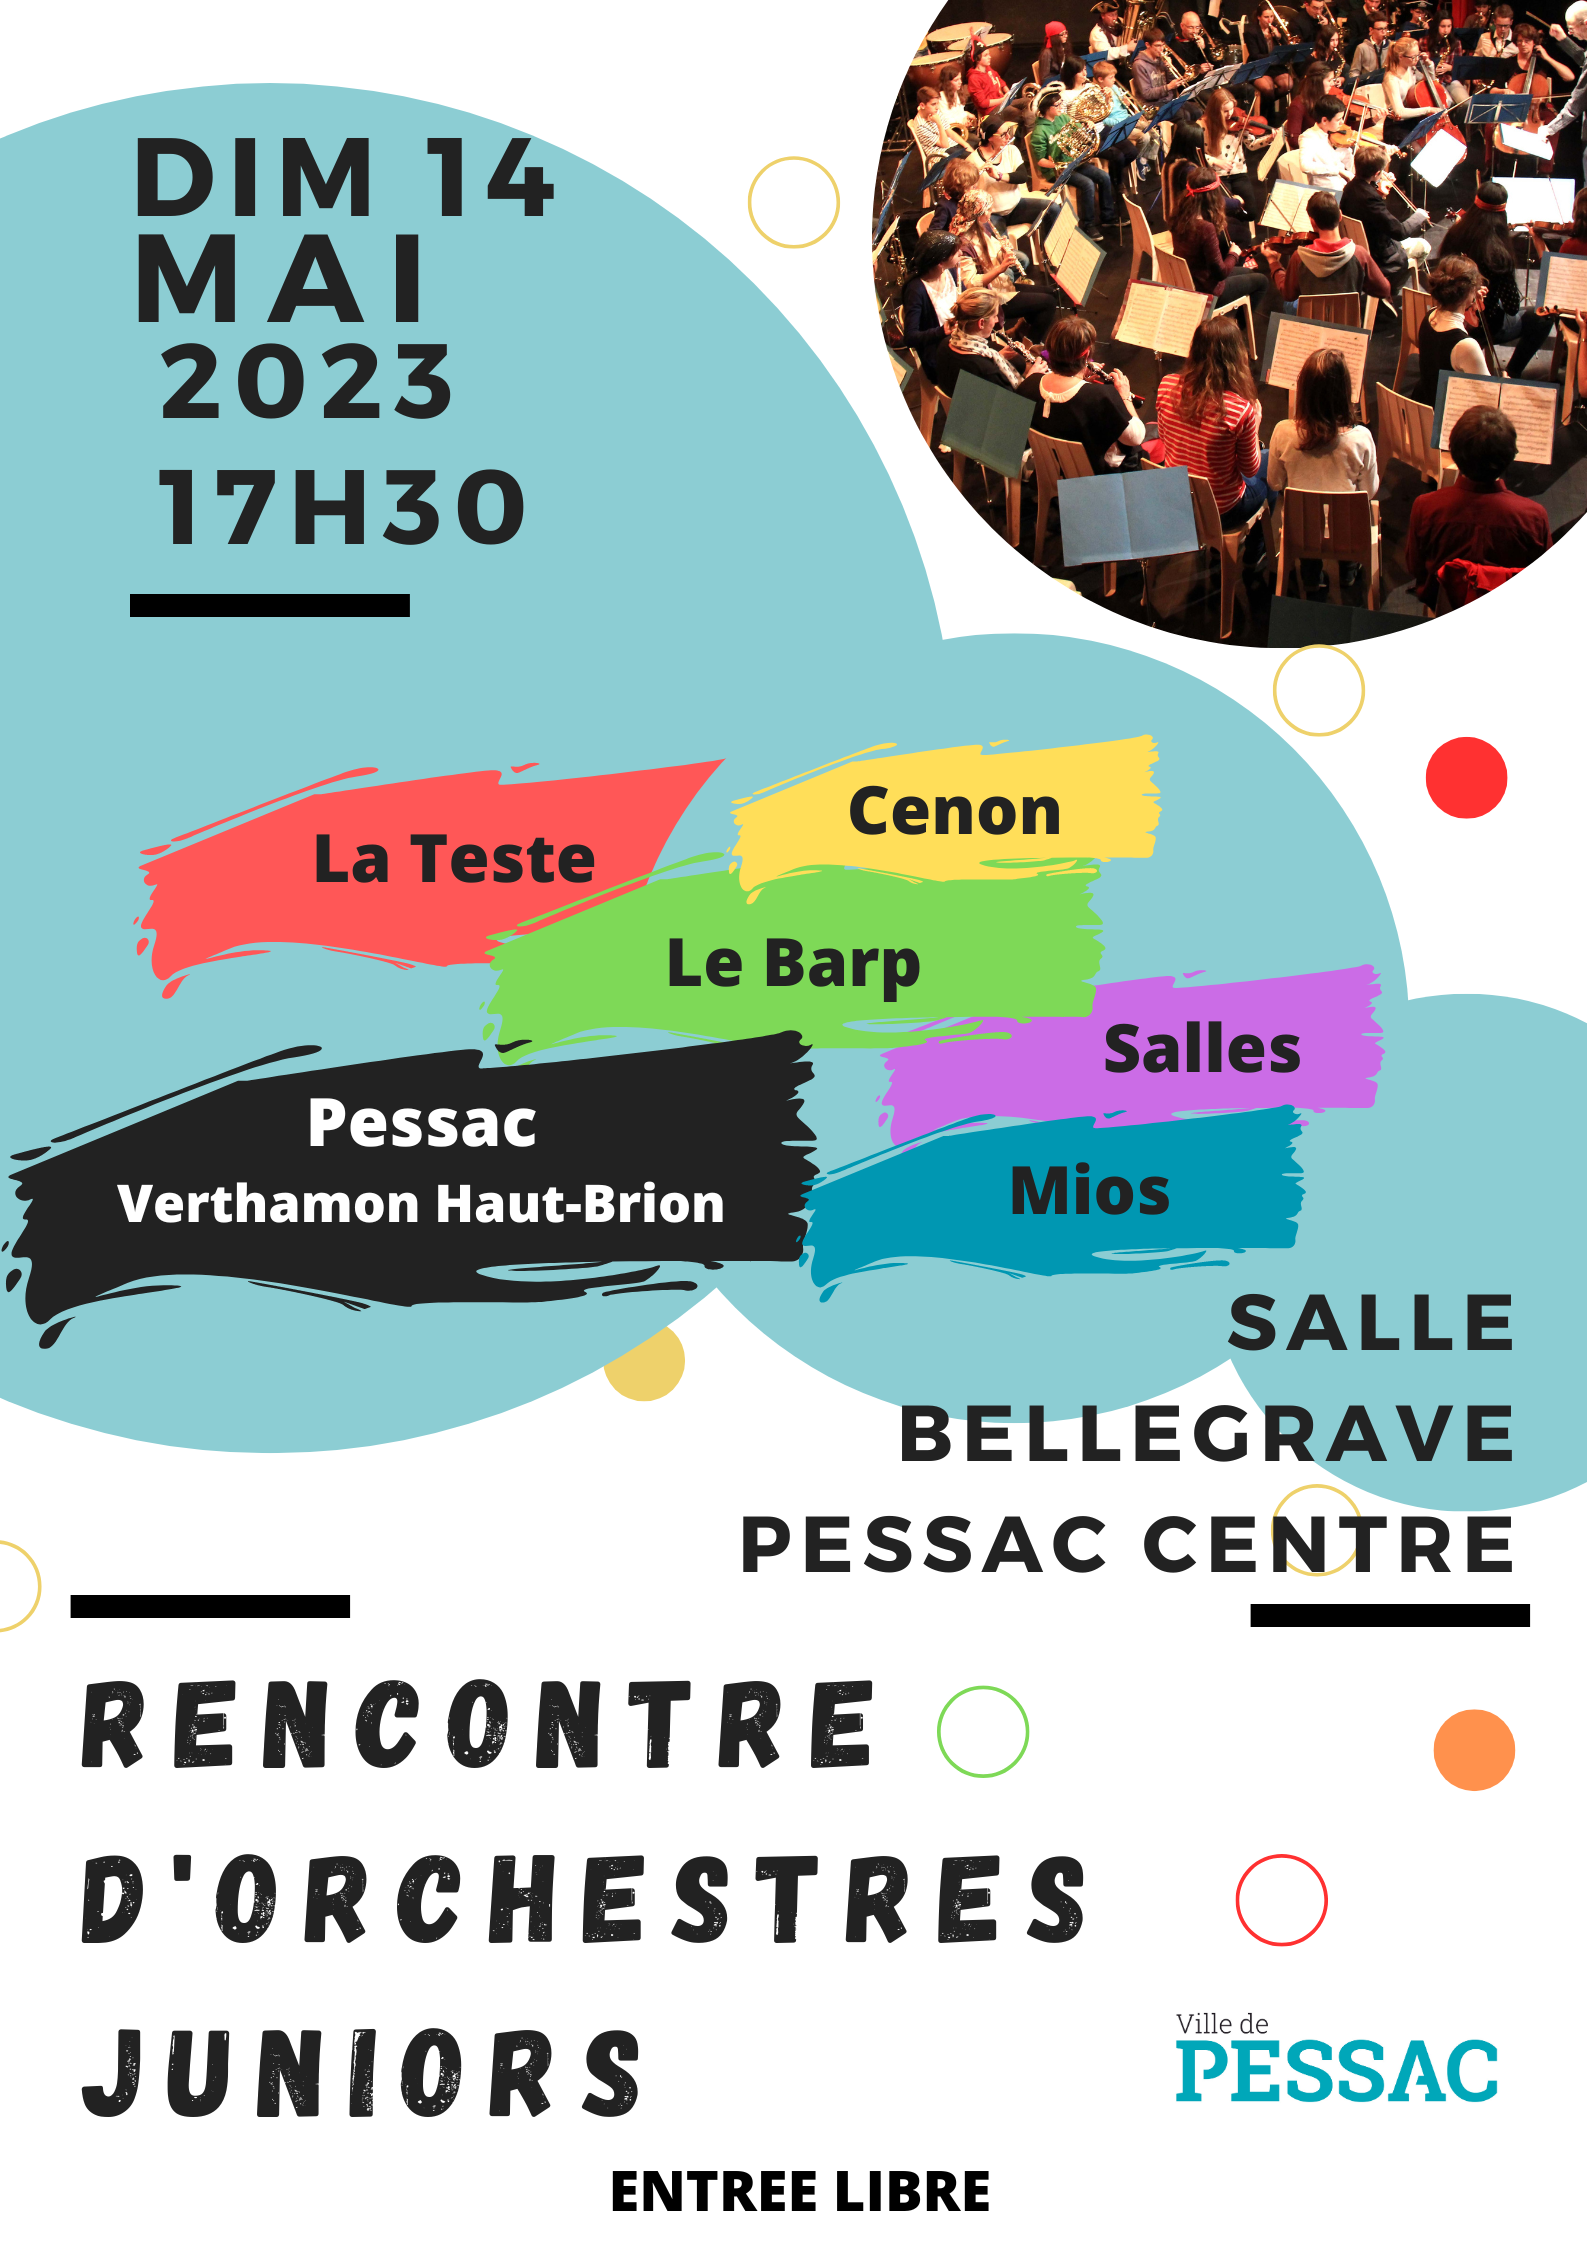 Rencontre des Orchestres Juniors - Dimanche 14/05 concert à 17h30 Salle Bellegrave Pessac